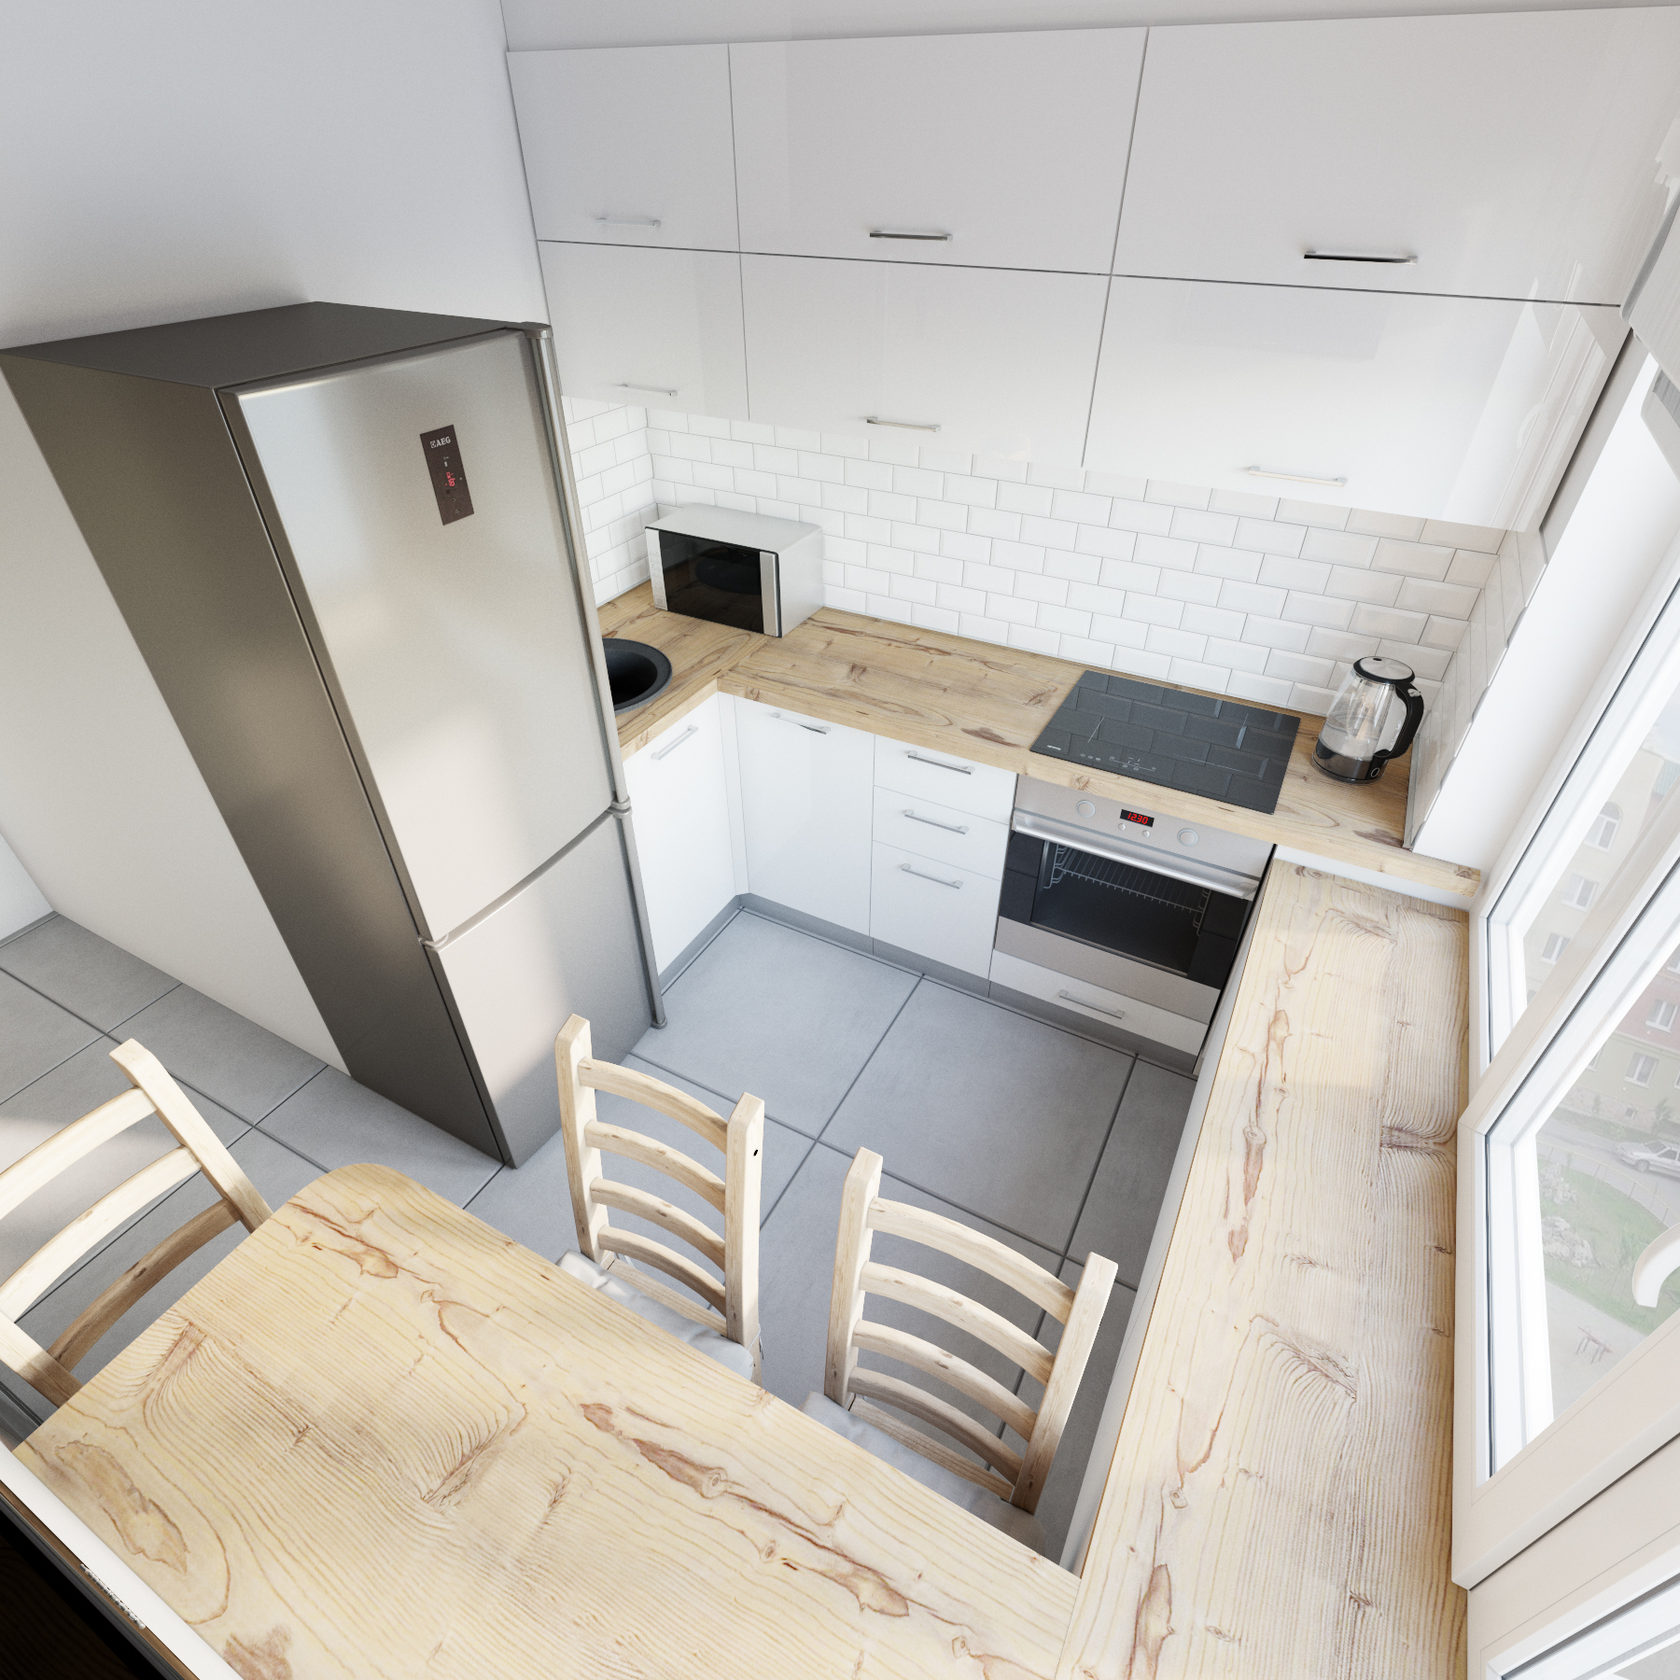 Кухня в панельном доме : комфорт и обустройство просторного помещения, 120+ лучших фото дизайна